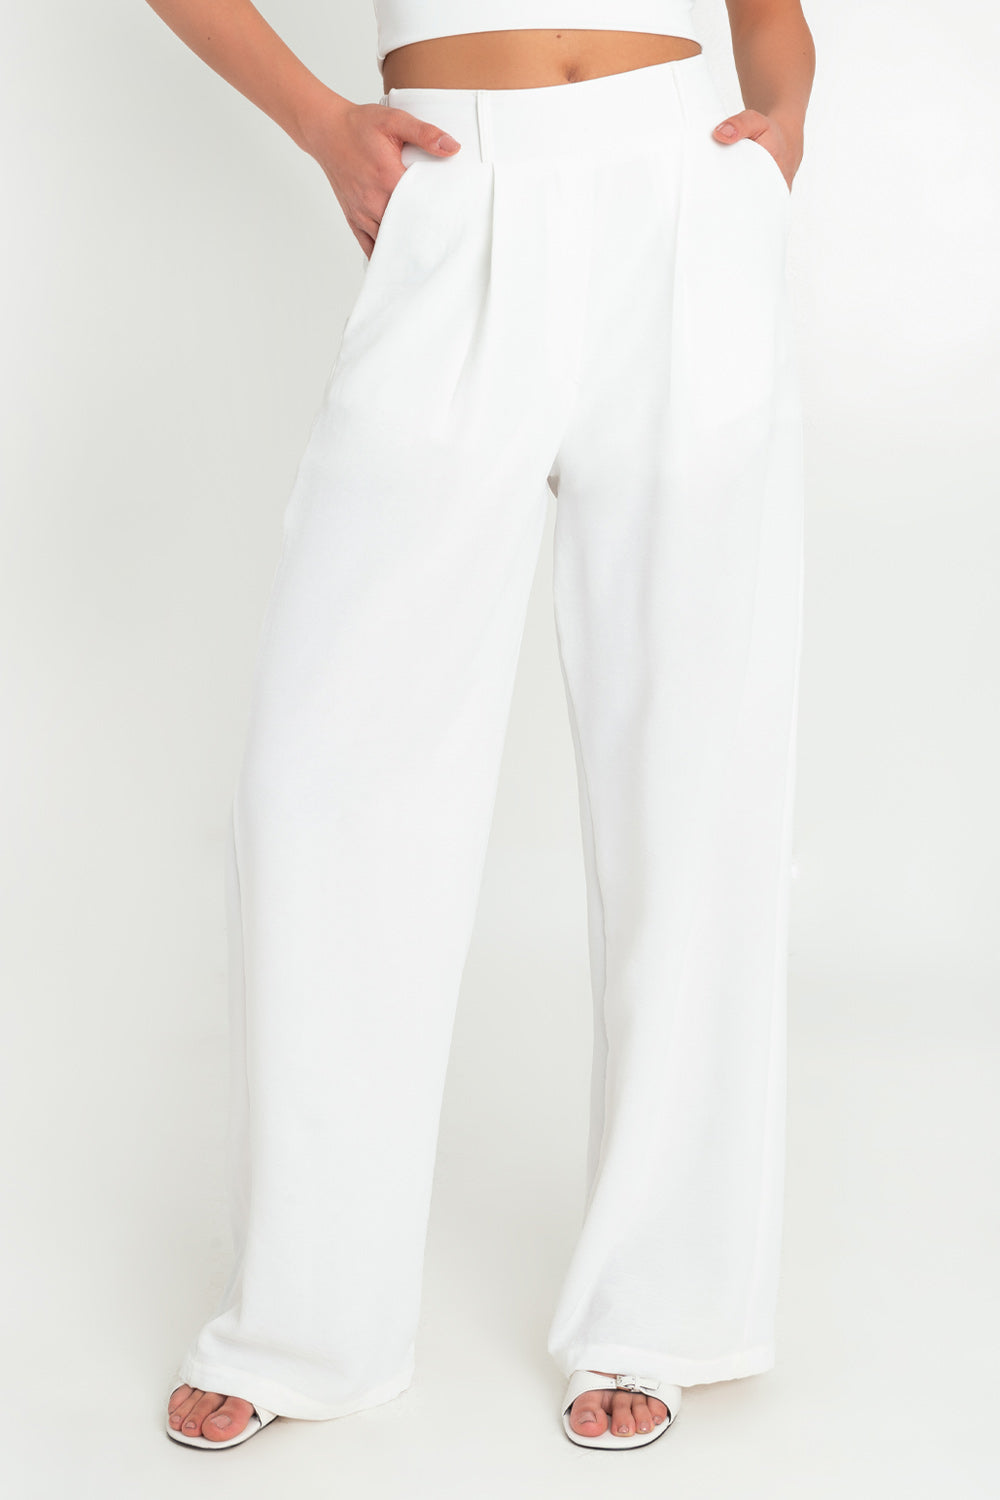 Pantalón de fit wide leg, cintura alta con pretina elástica posterior y trabillas, bolsillos delanteros y pinzas frontales.